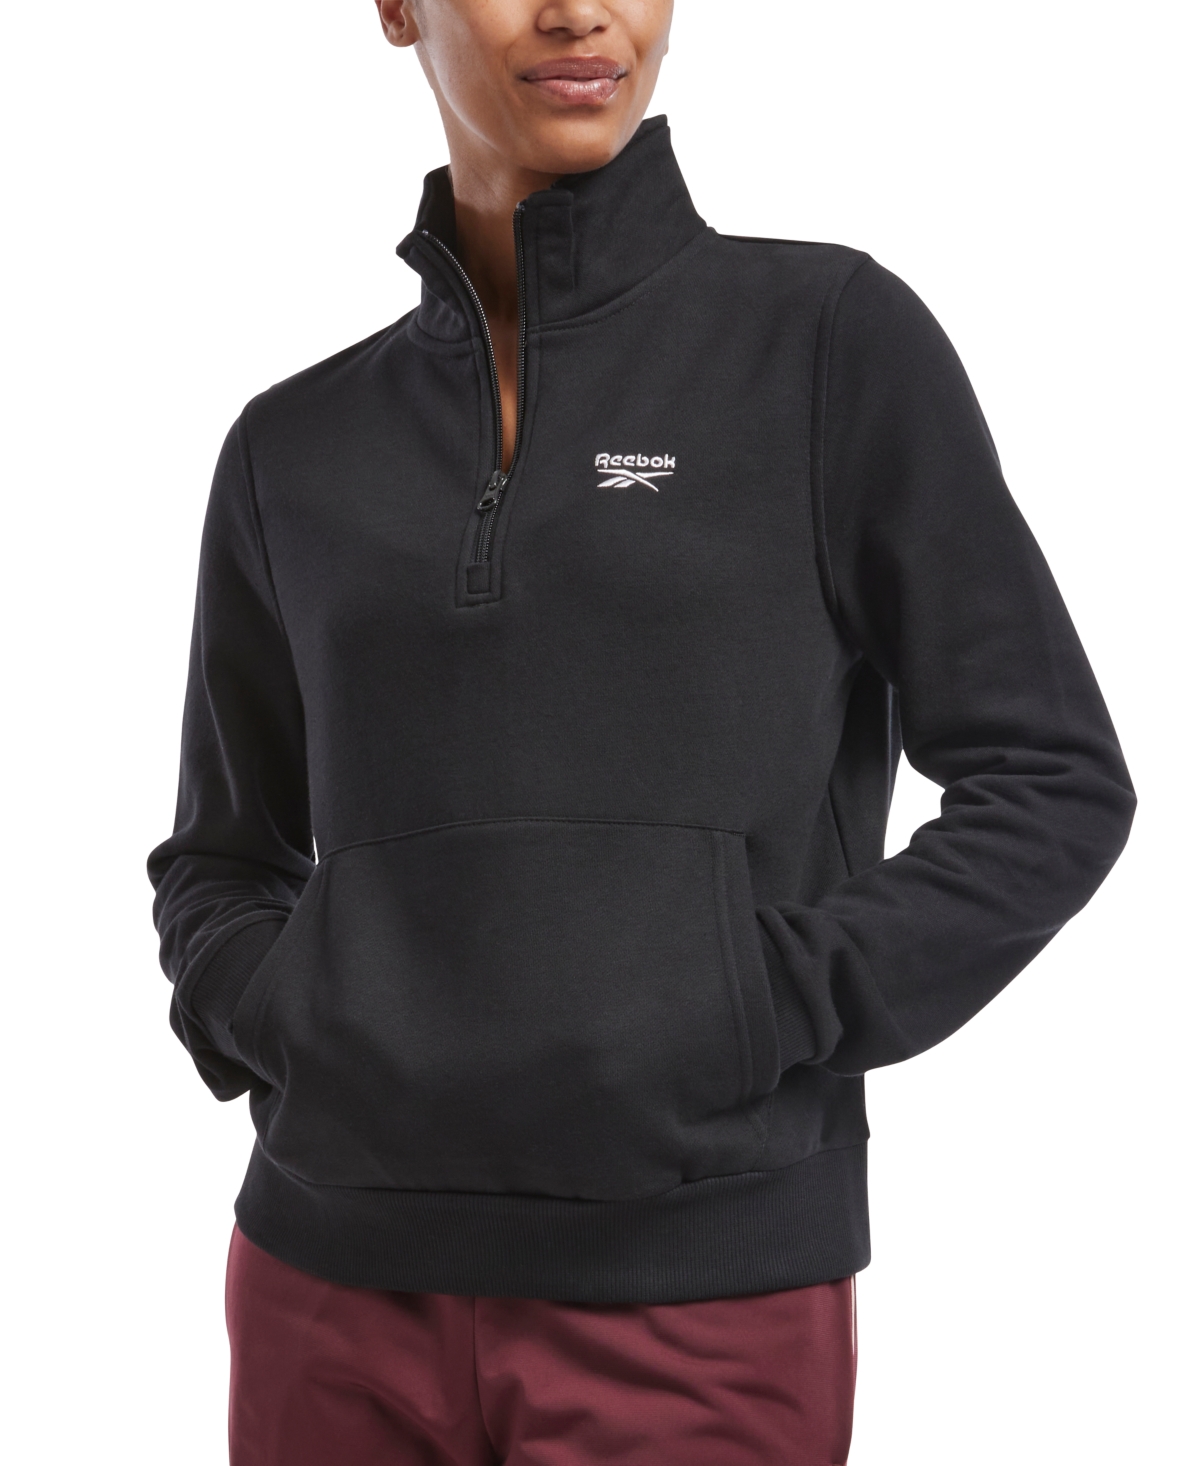 Reebok Women's Quarter-zip Fleece Sweatshirt In Black